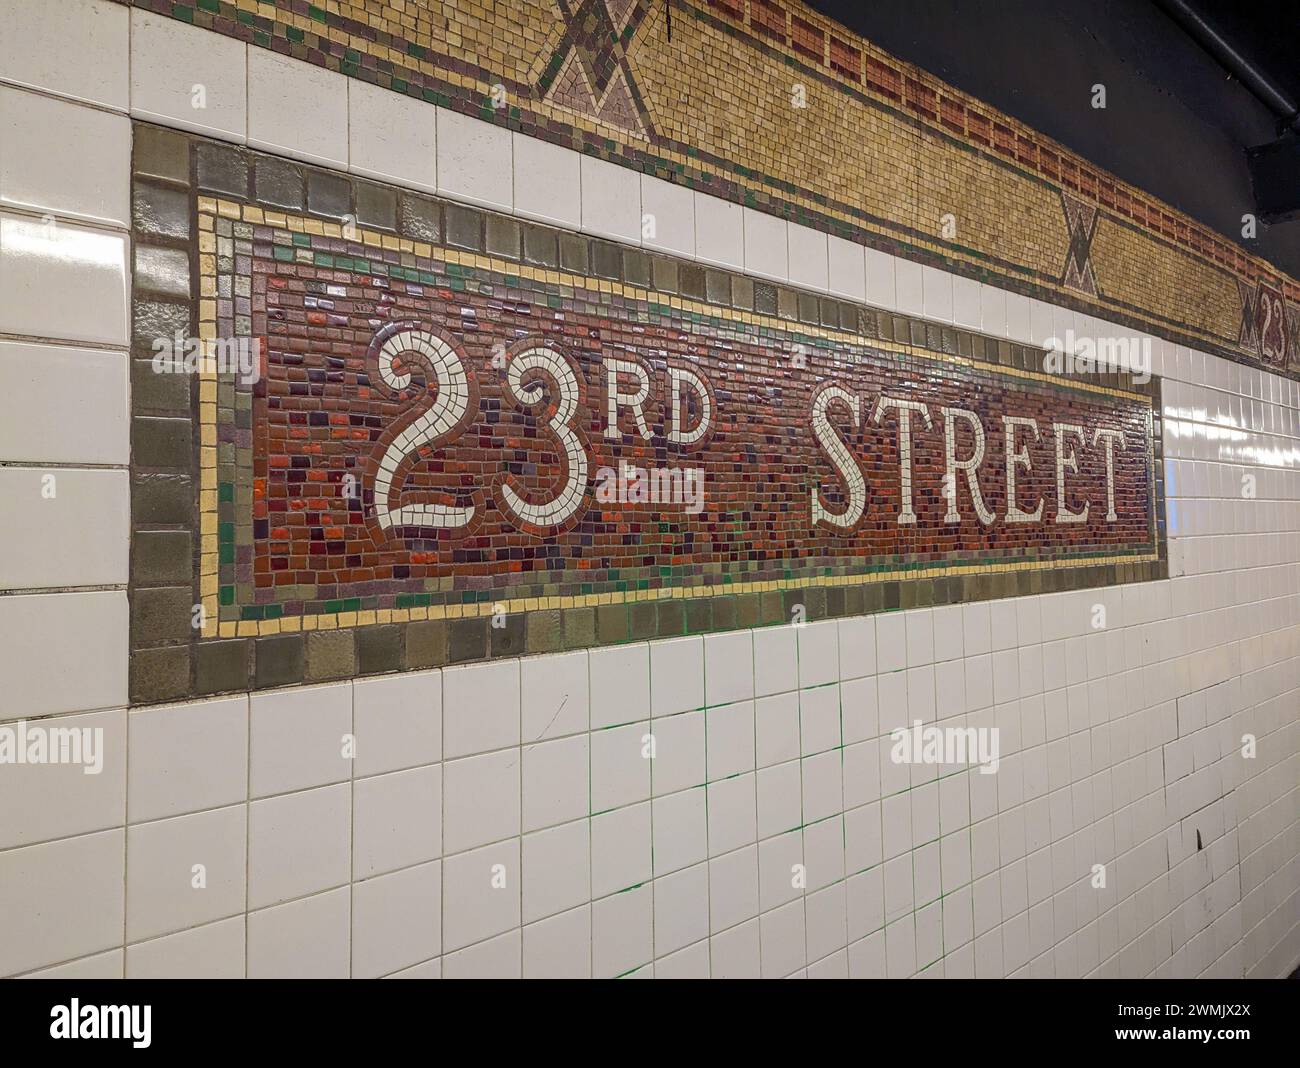 Mosaikschild für die U-Bahn-Station 23rd Street in New York City Stockfoto